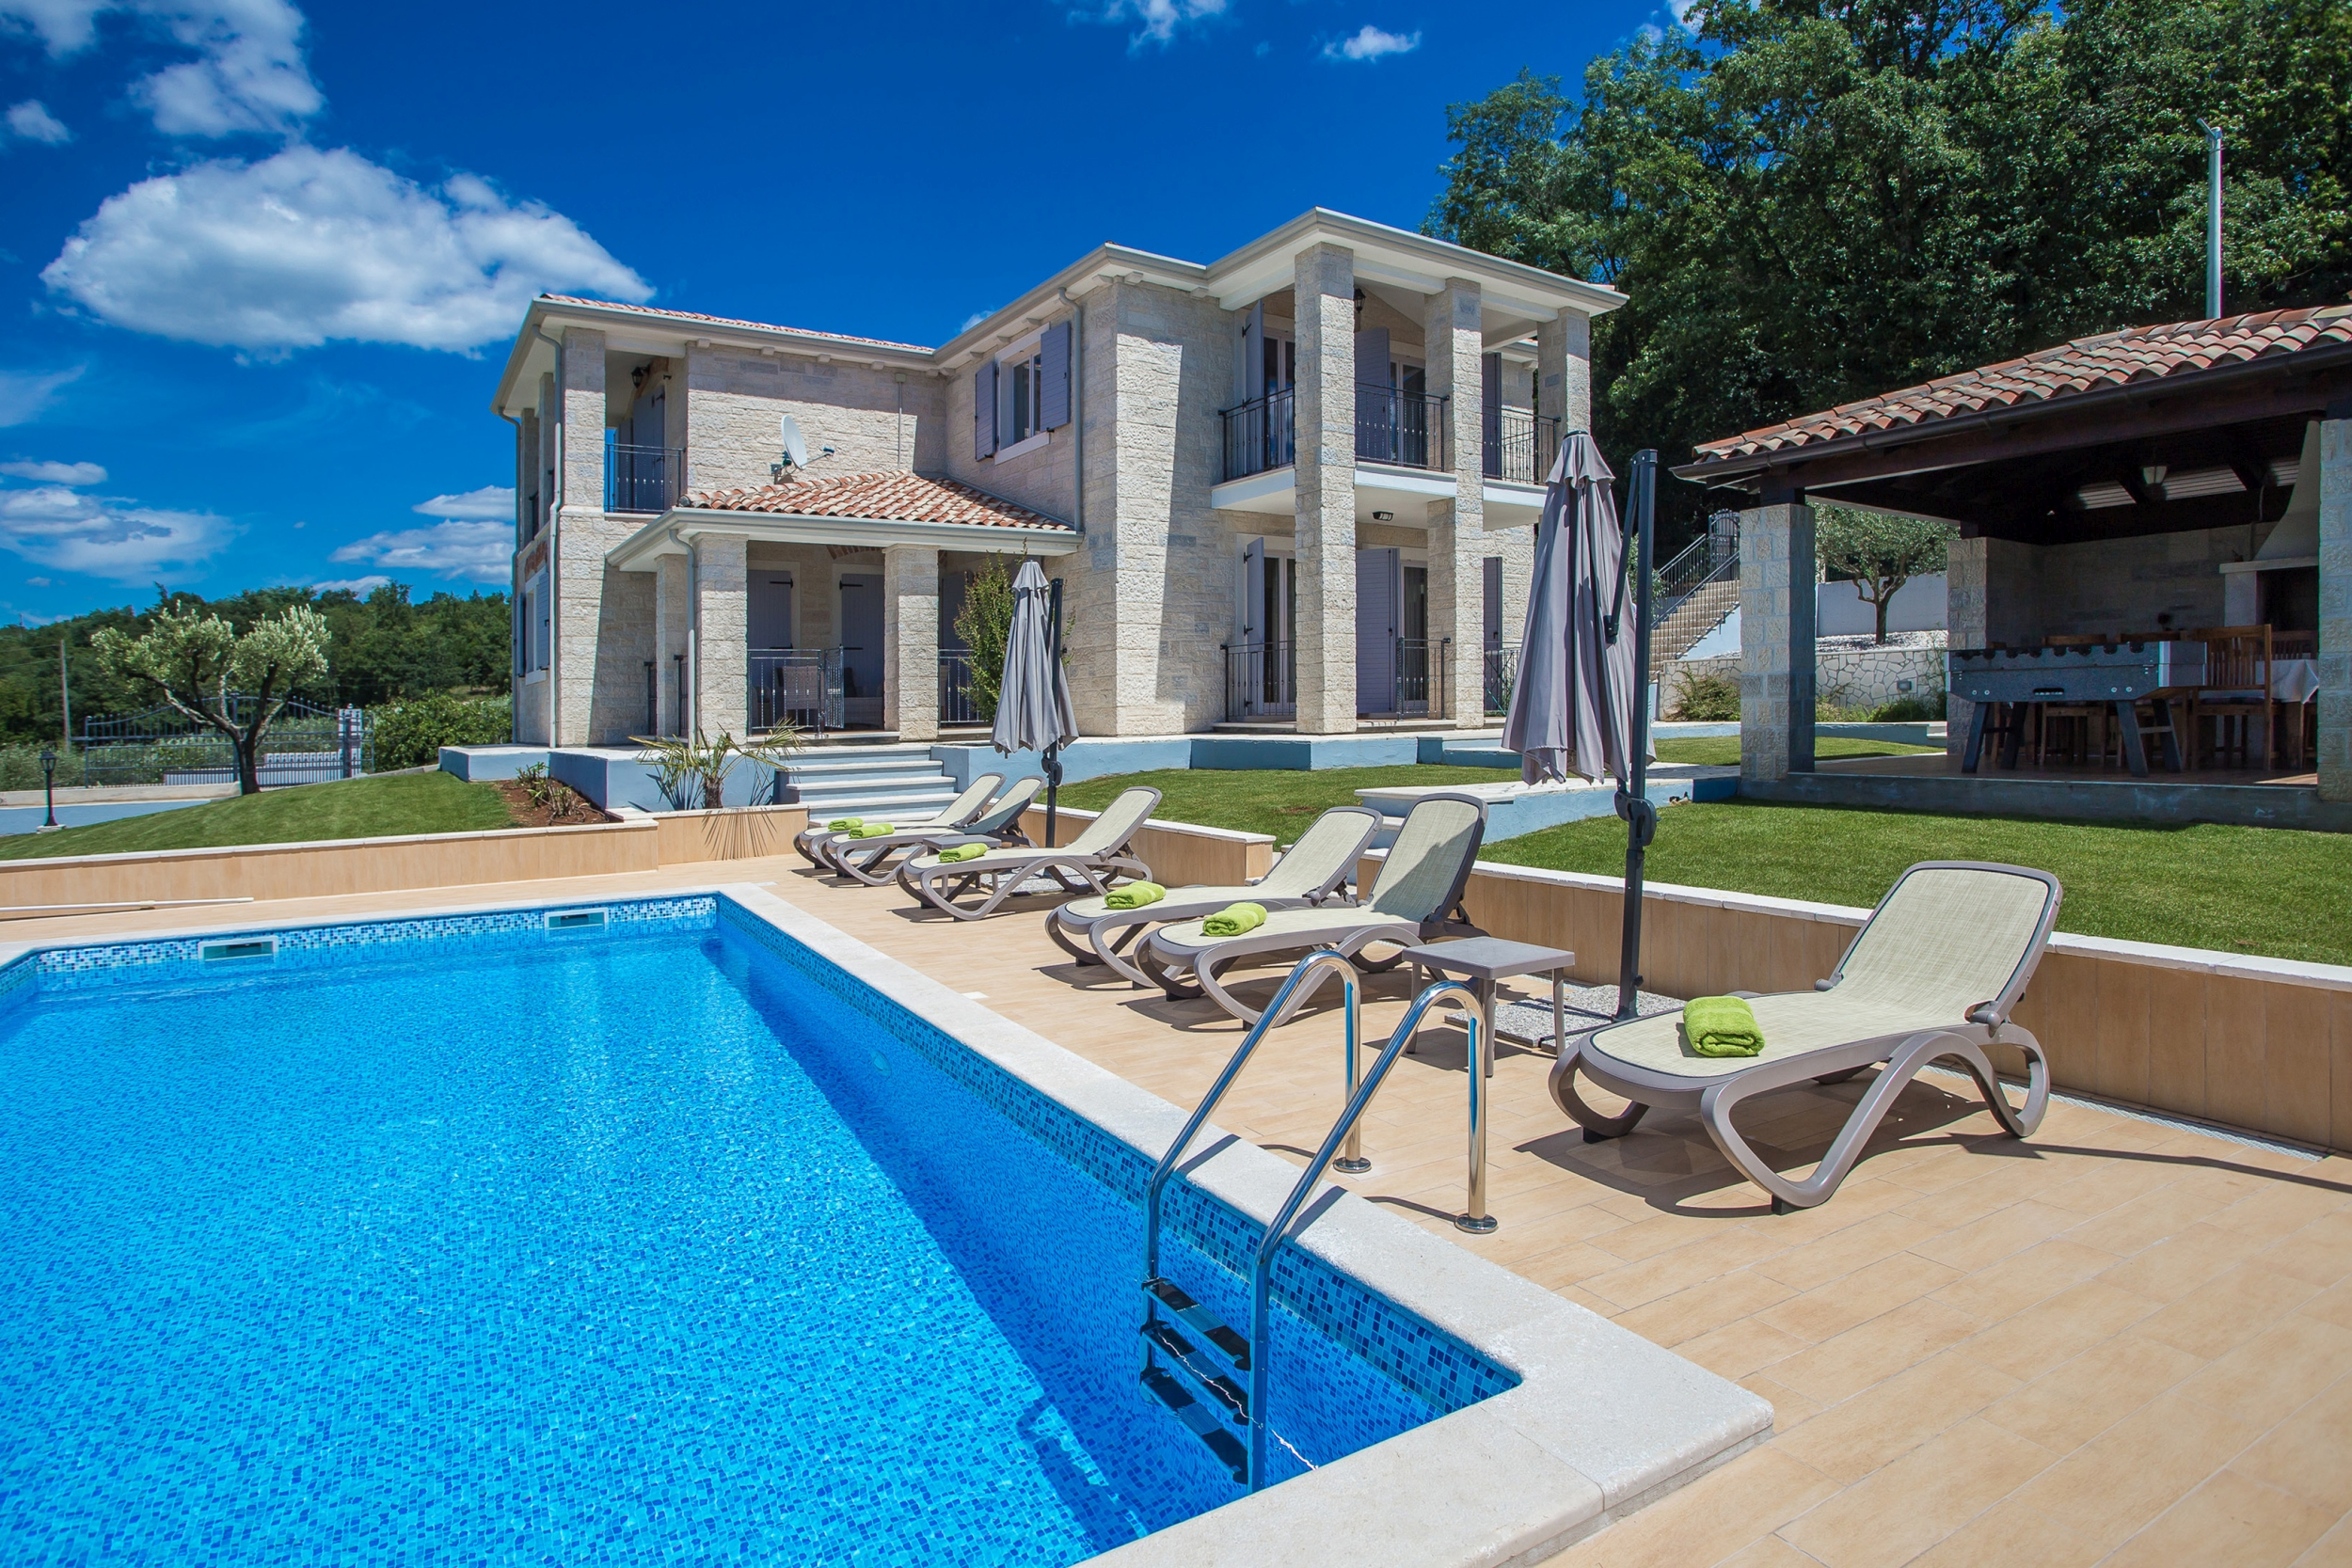 Villa Ilmea nalazi se u naselju Ferenci, u Vižinadi, blizu Motovuna.